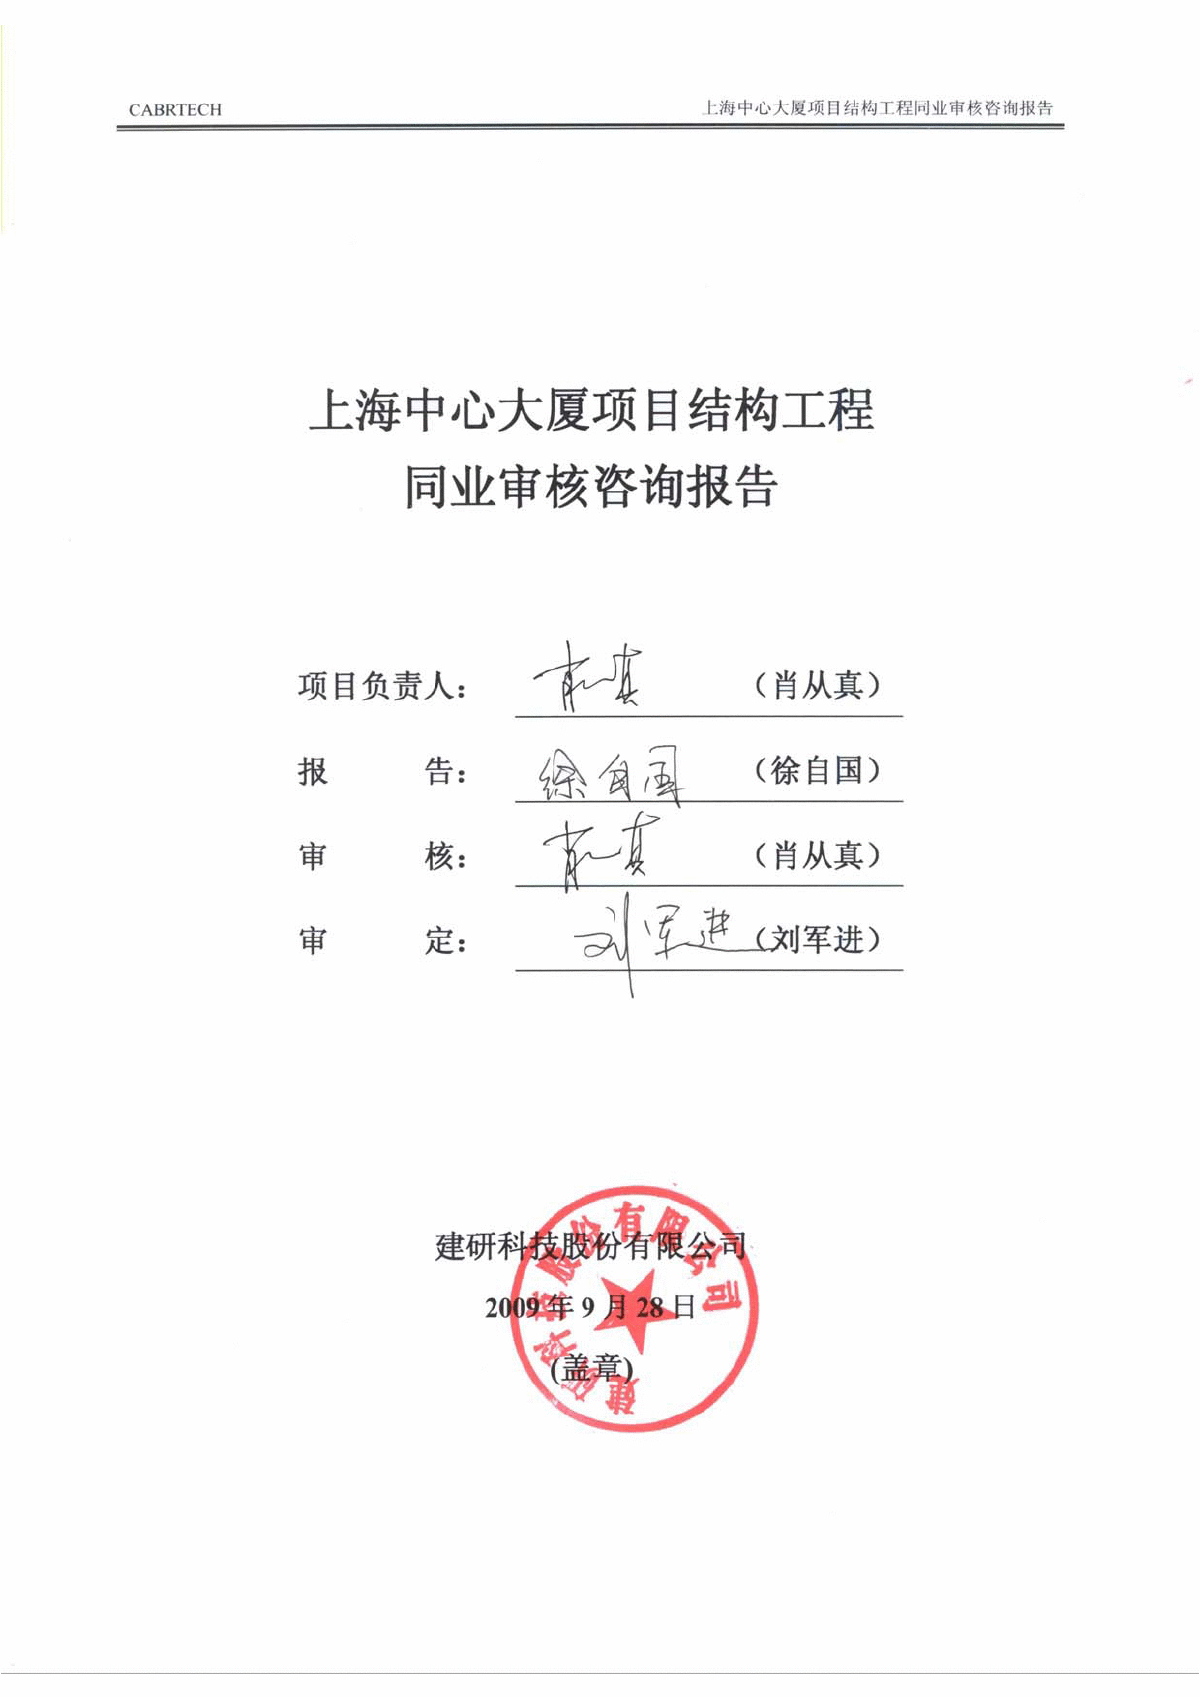 上海中心结构超限审查报告第三方评审报告(正式)-图二